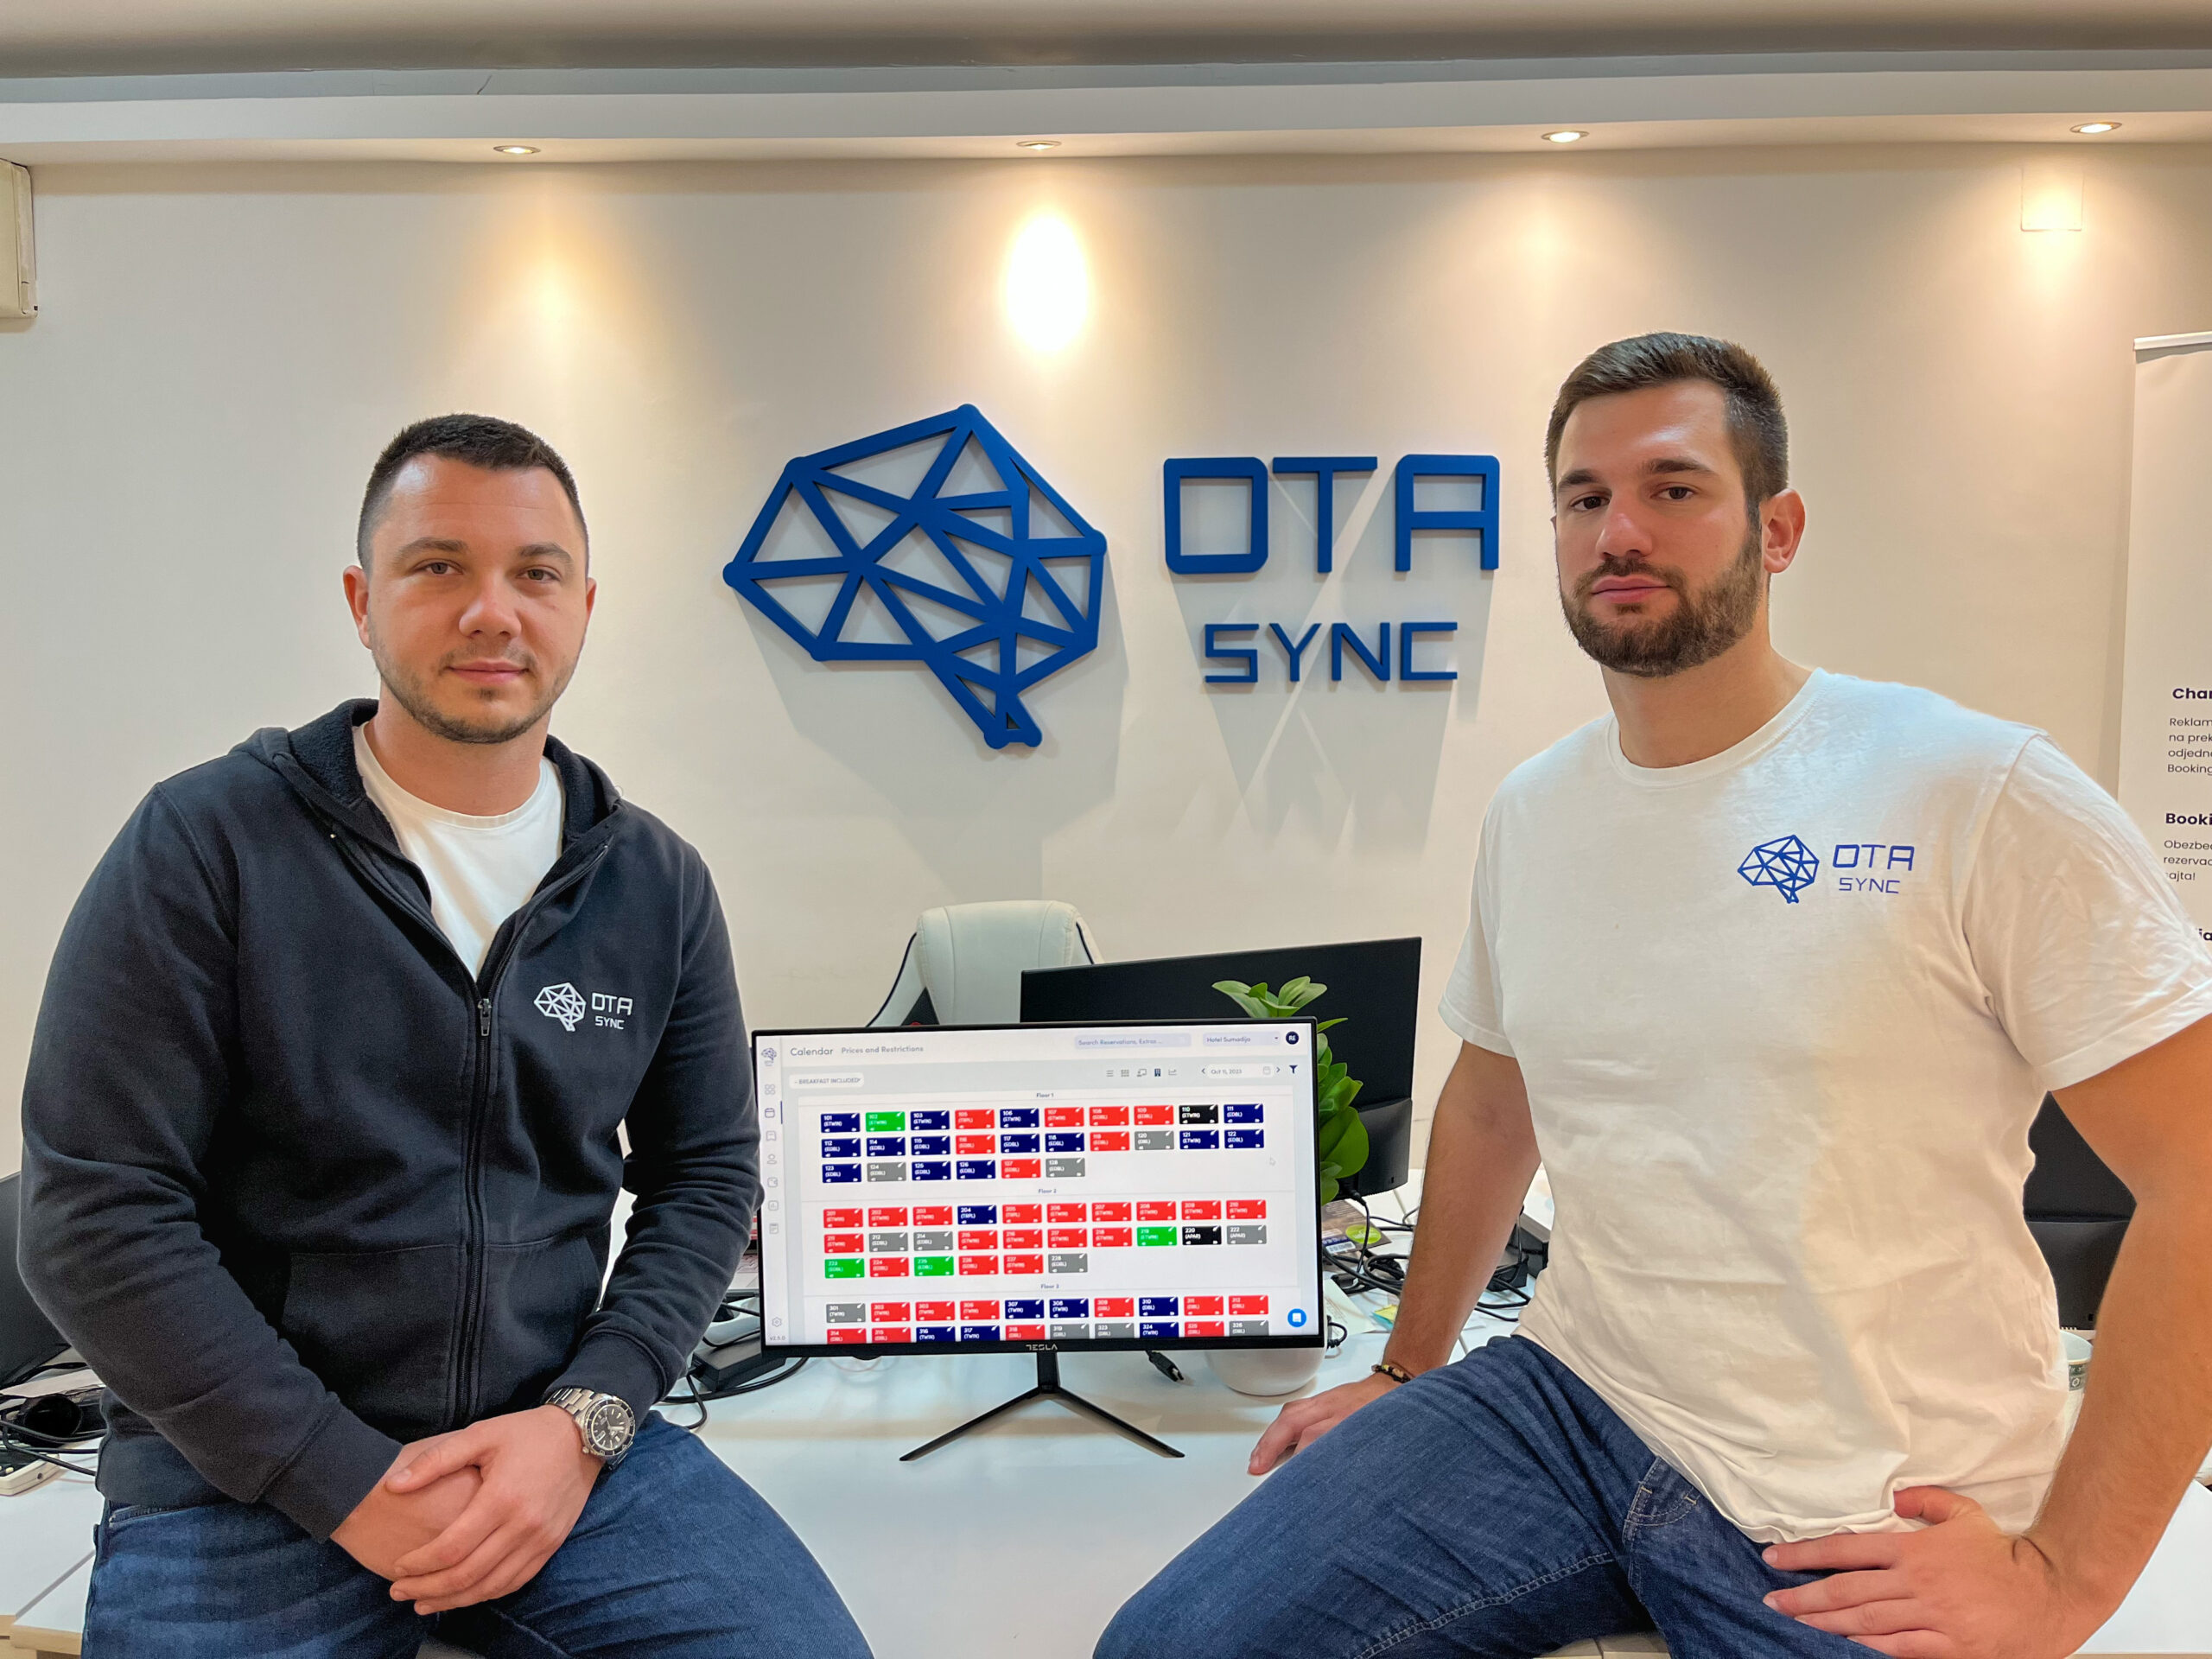 OTA Sync 即将完成由 Presto Ventures 领投的 1.3 万欧元国际种子轮融资